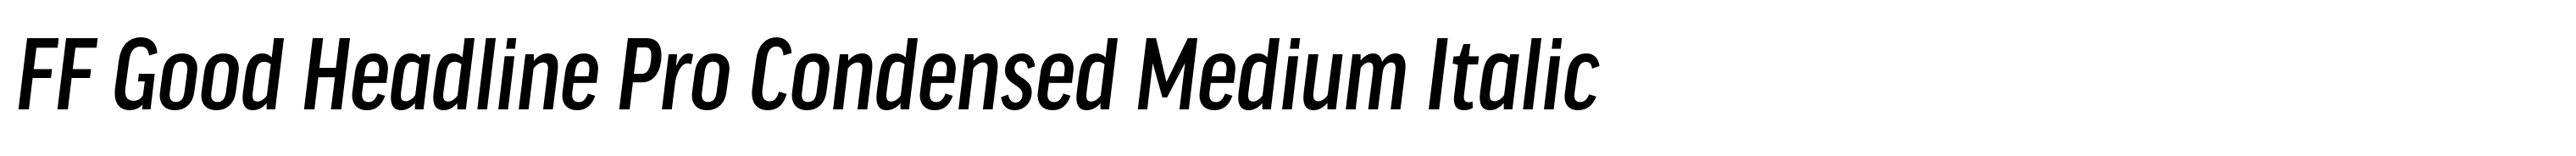 FF Good Headline Pro Condensed Medium Italic